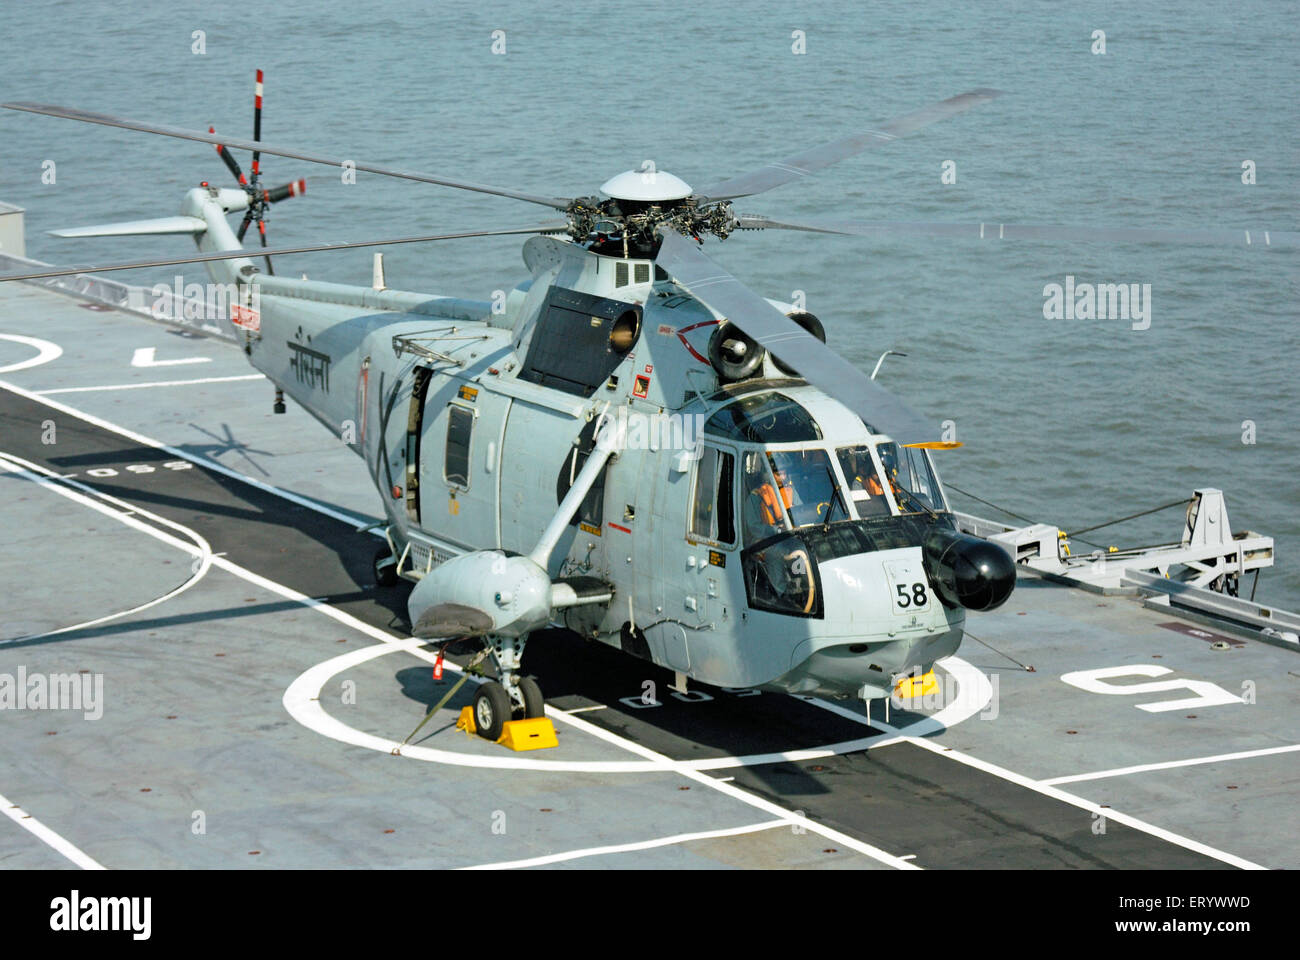 MI 18 elicottero della Marina indiana sul ponte della portaerei INS viraat R22 nel mare Arabico Mumbai Foto Stock